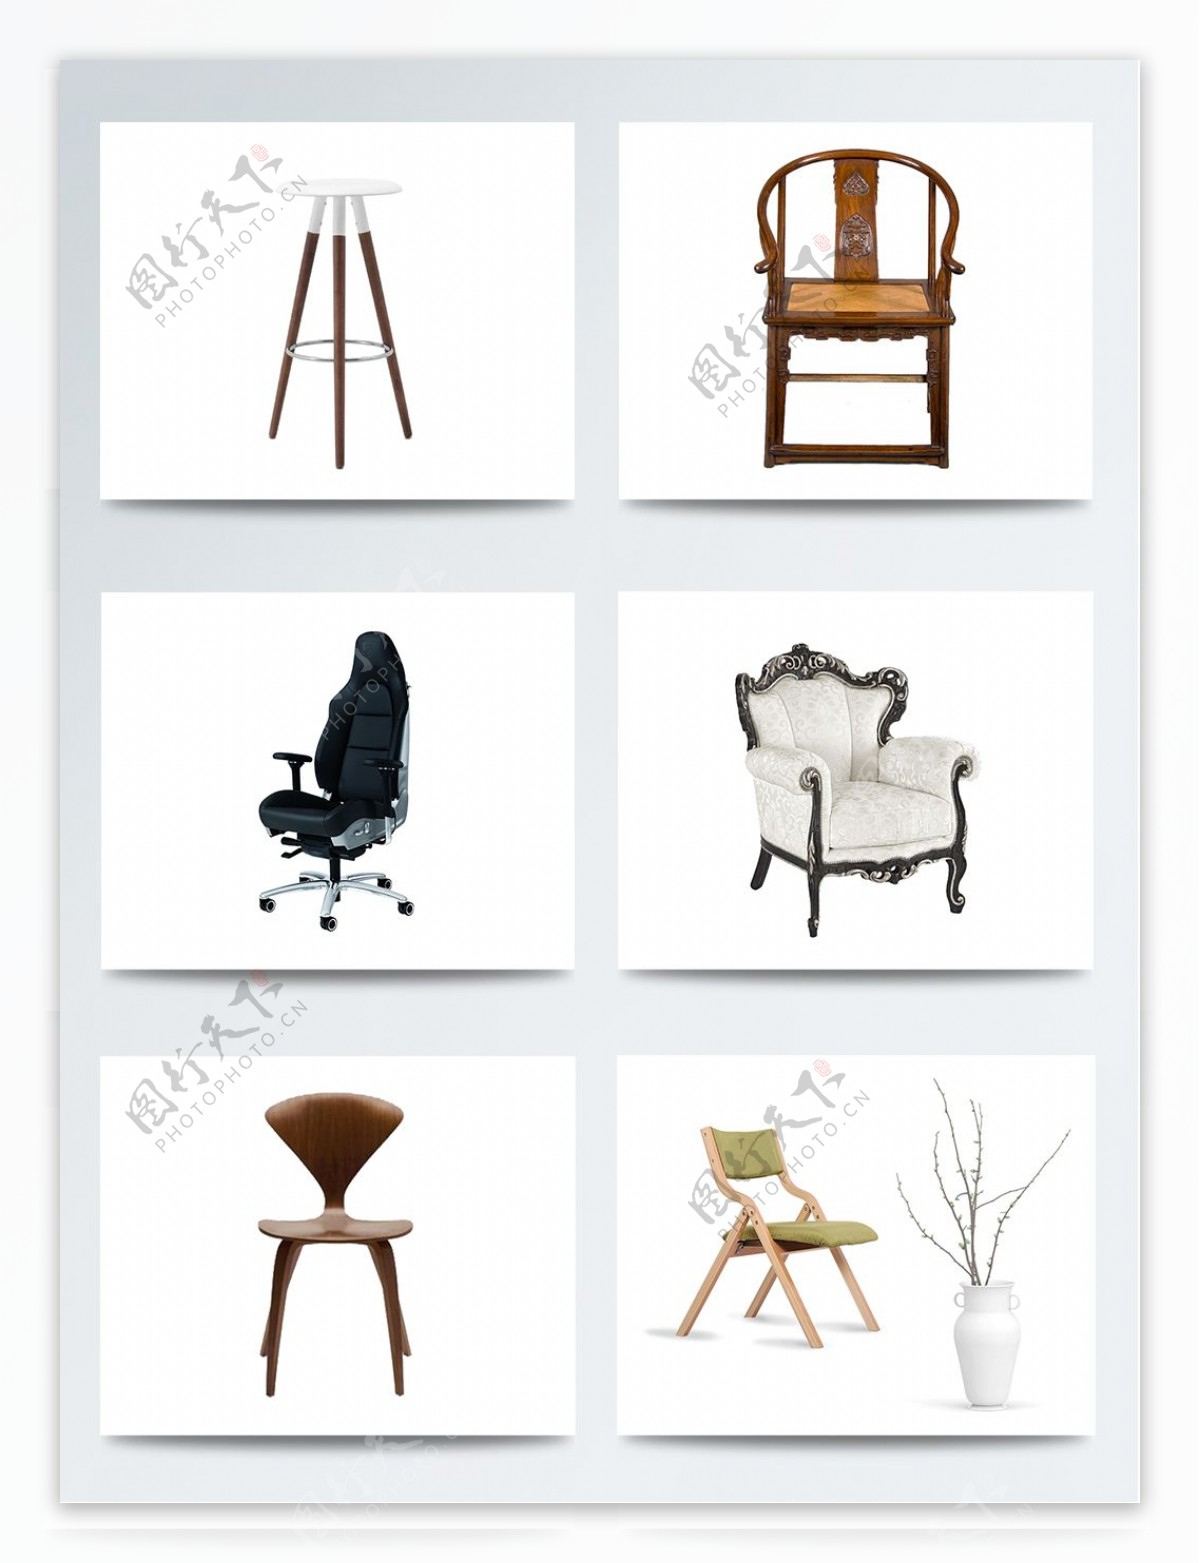 实物椅子老板椅欧美简约中式木质